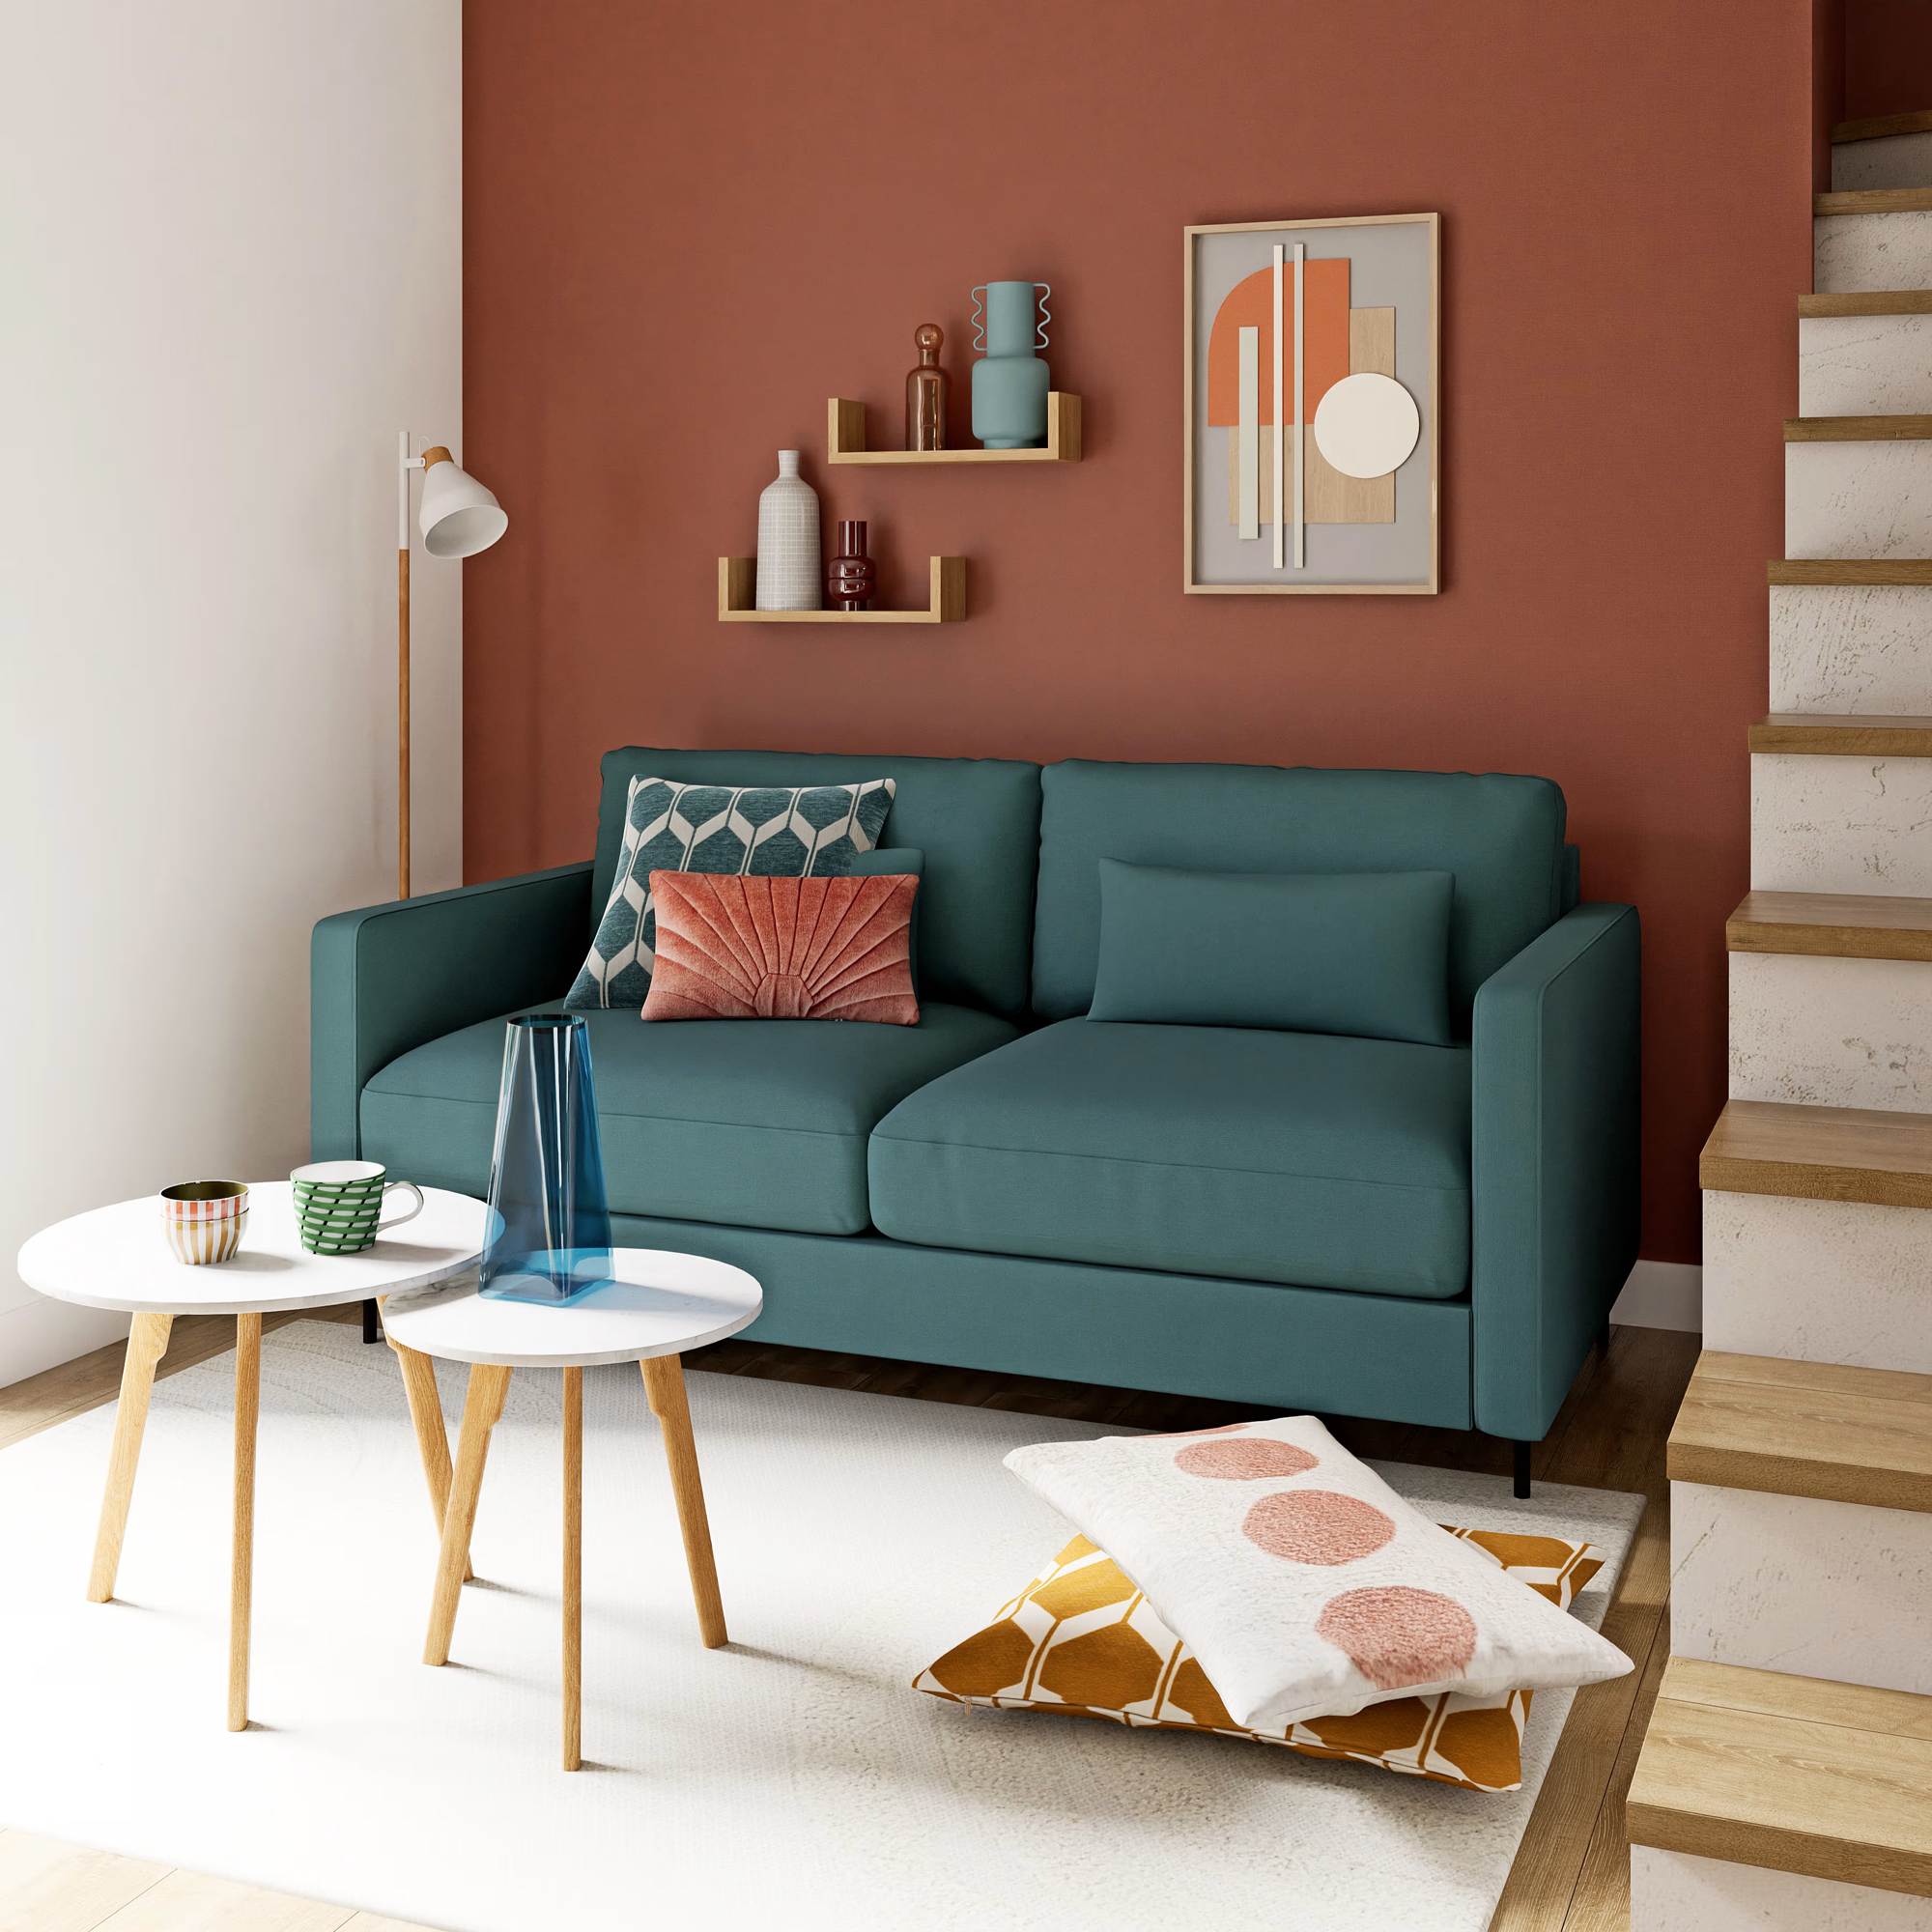 Habitación moderna de sofá celeste y pared de acento en terracota. Mesitas de café blanca con patas de madera natural.